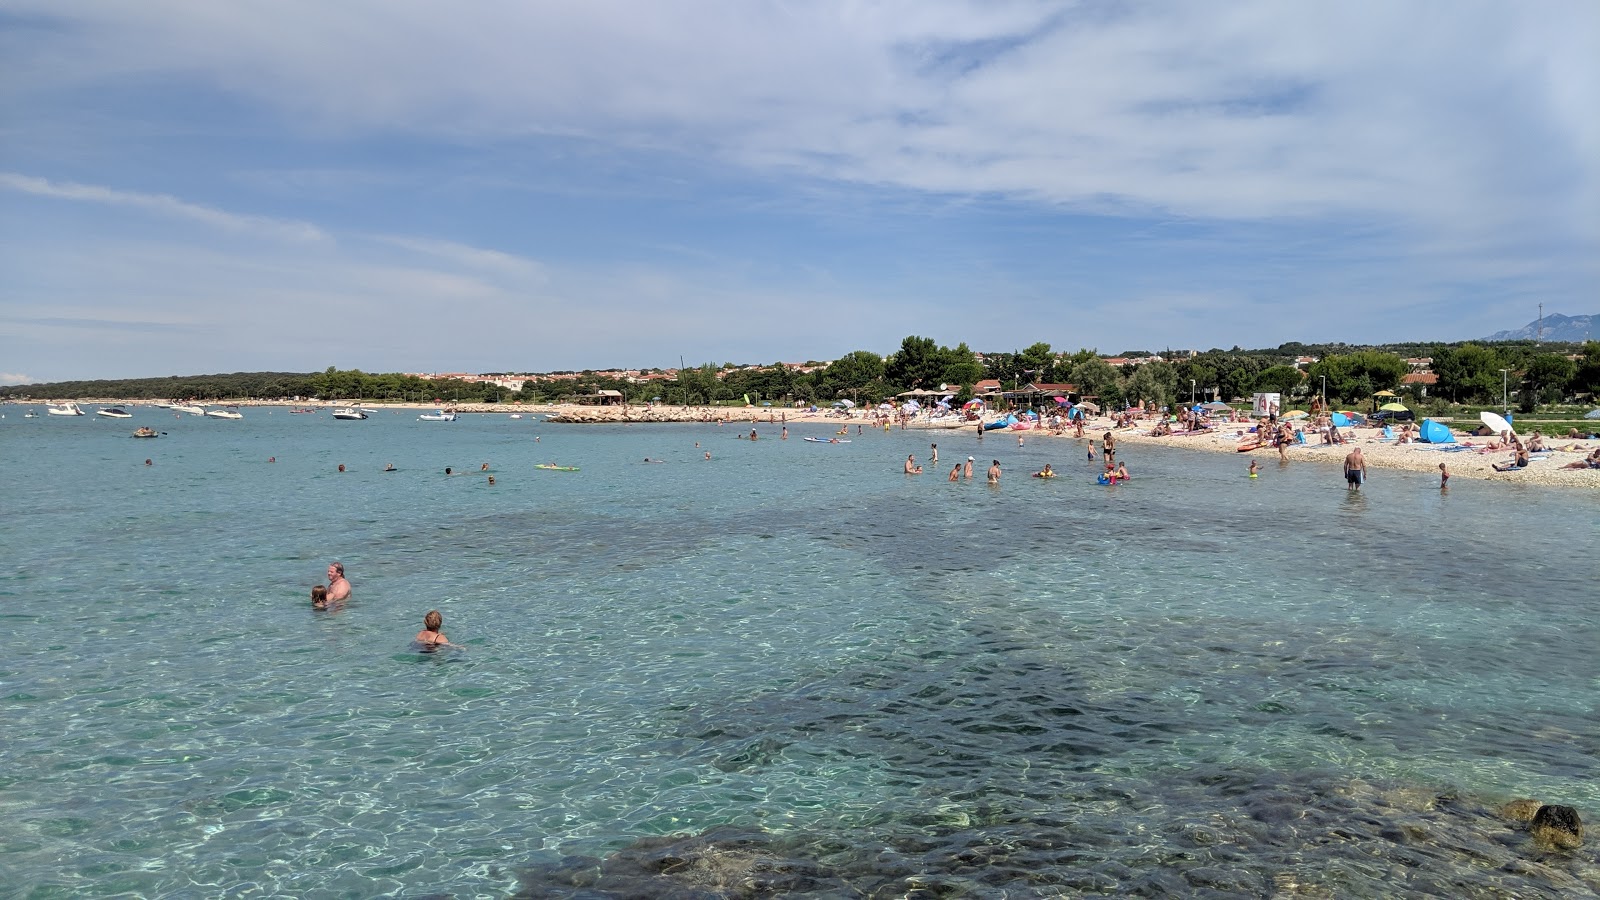 Fotografie cu Gajac beach - locul popular printre cunoscătorii de relaxare